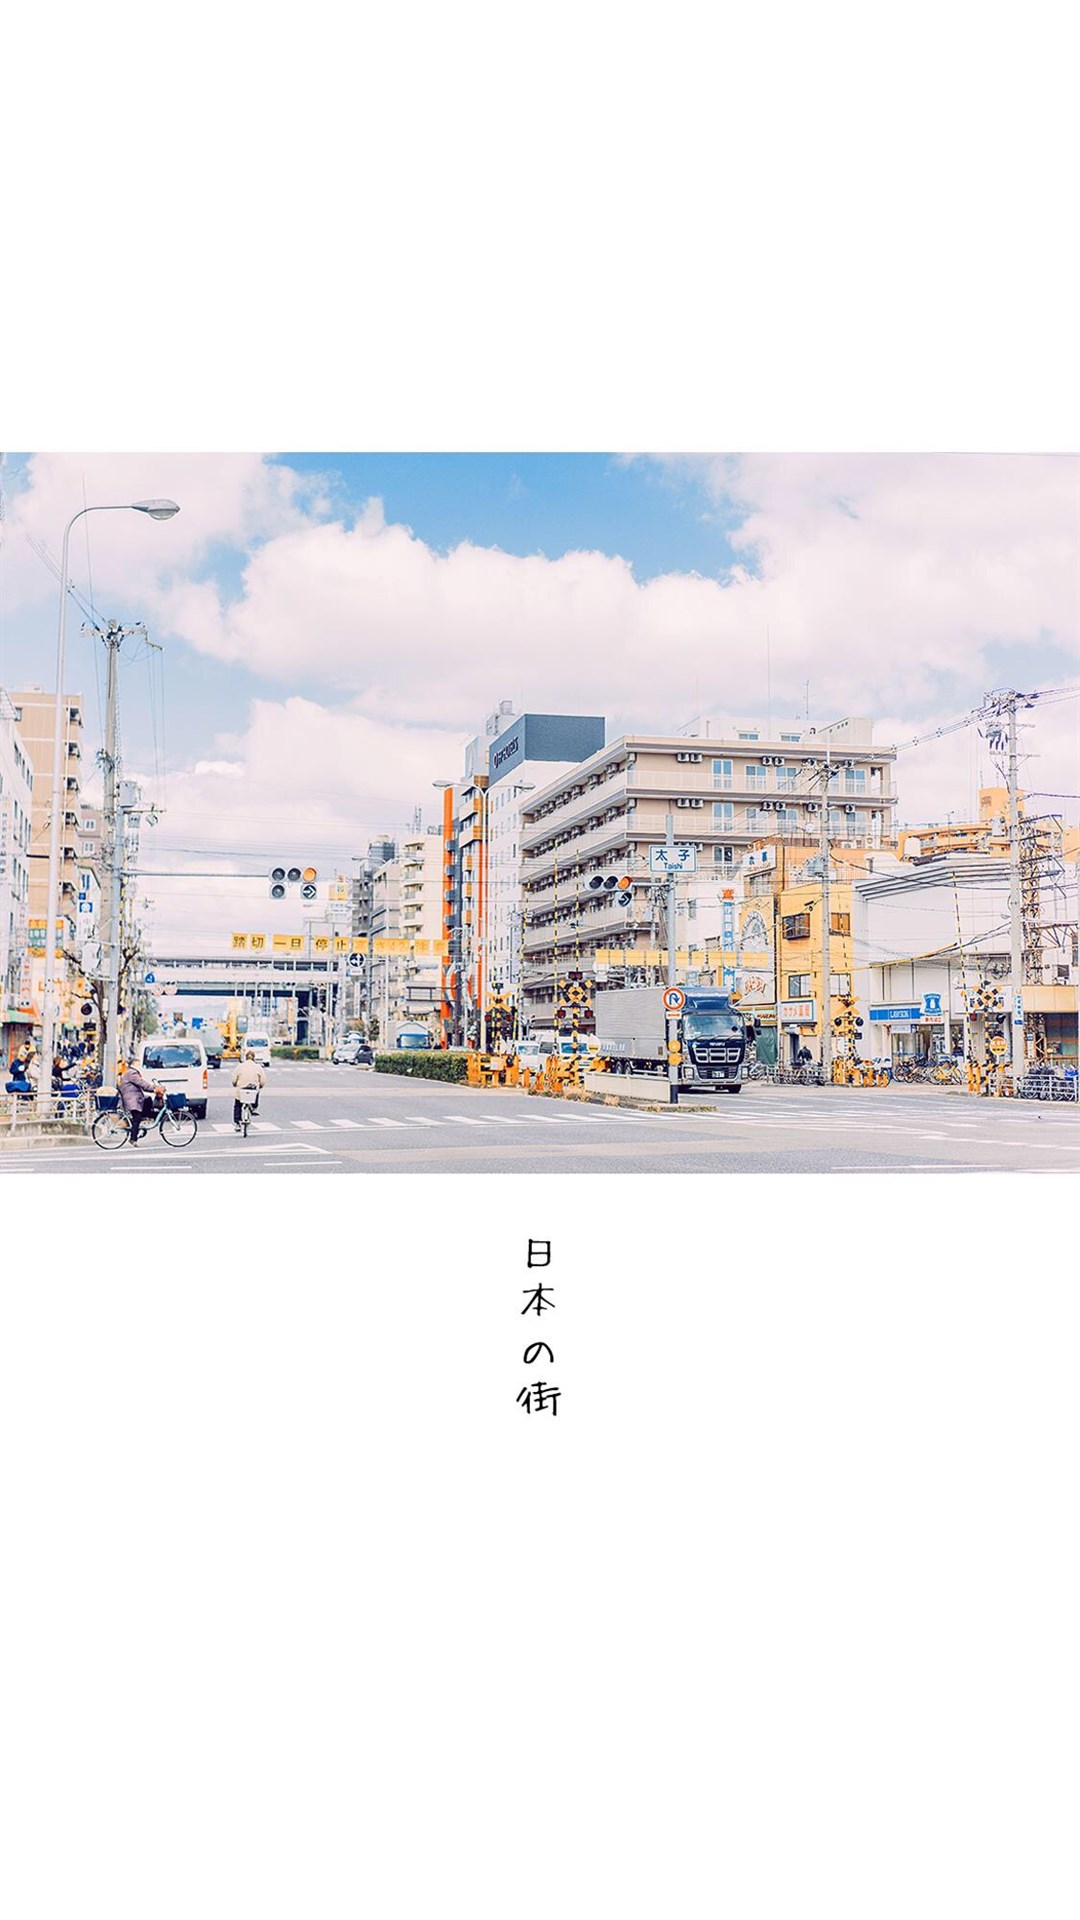 街景图片素材 清新简约日本街景风光手机壁纸(2)